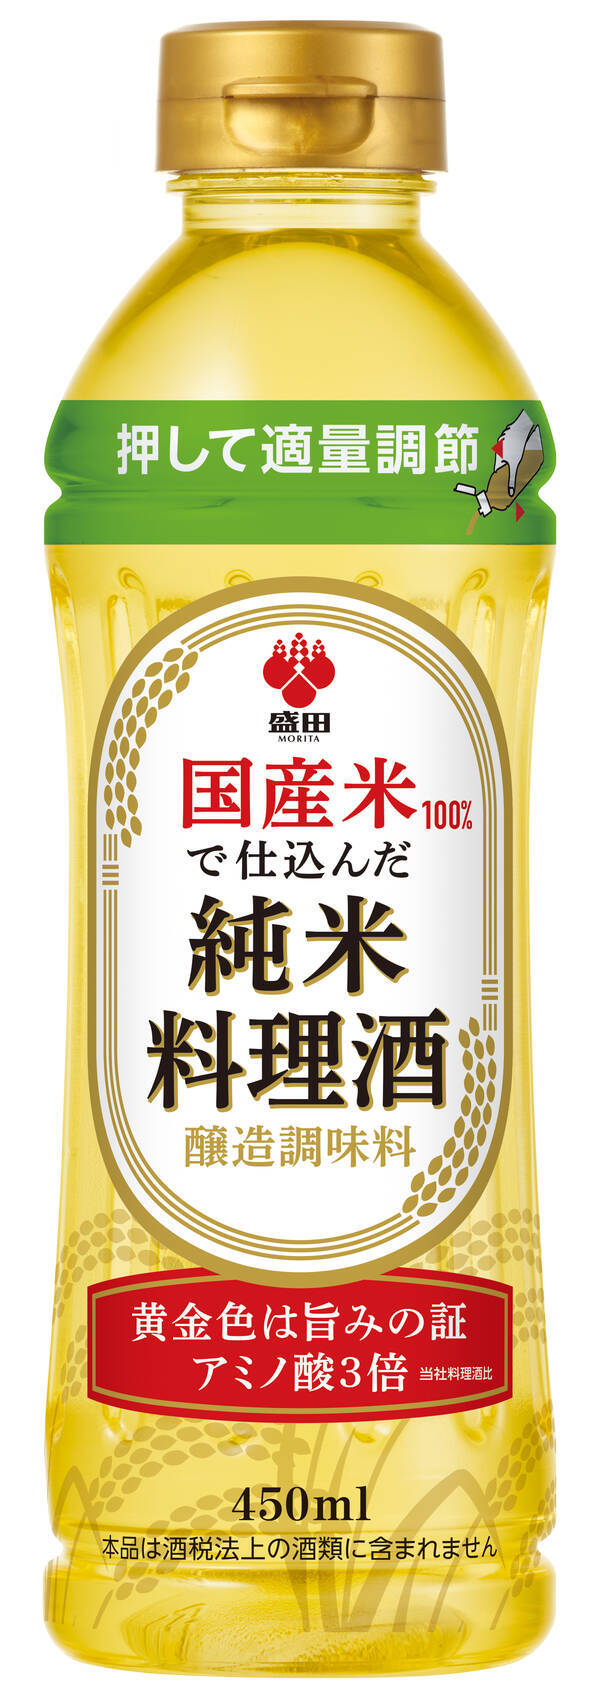 盛田から「国産米100% 純米料理酒」を新発売のお知らせ (2021年8月20日) - エキサイトニュース